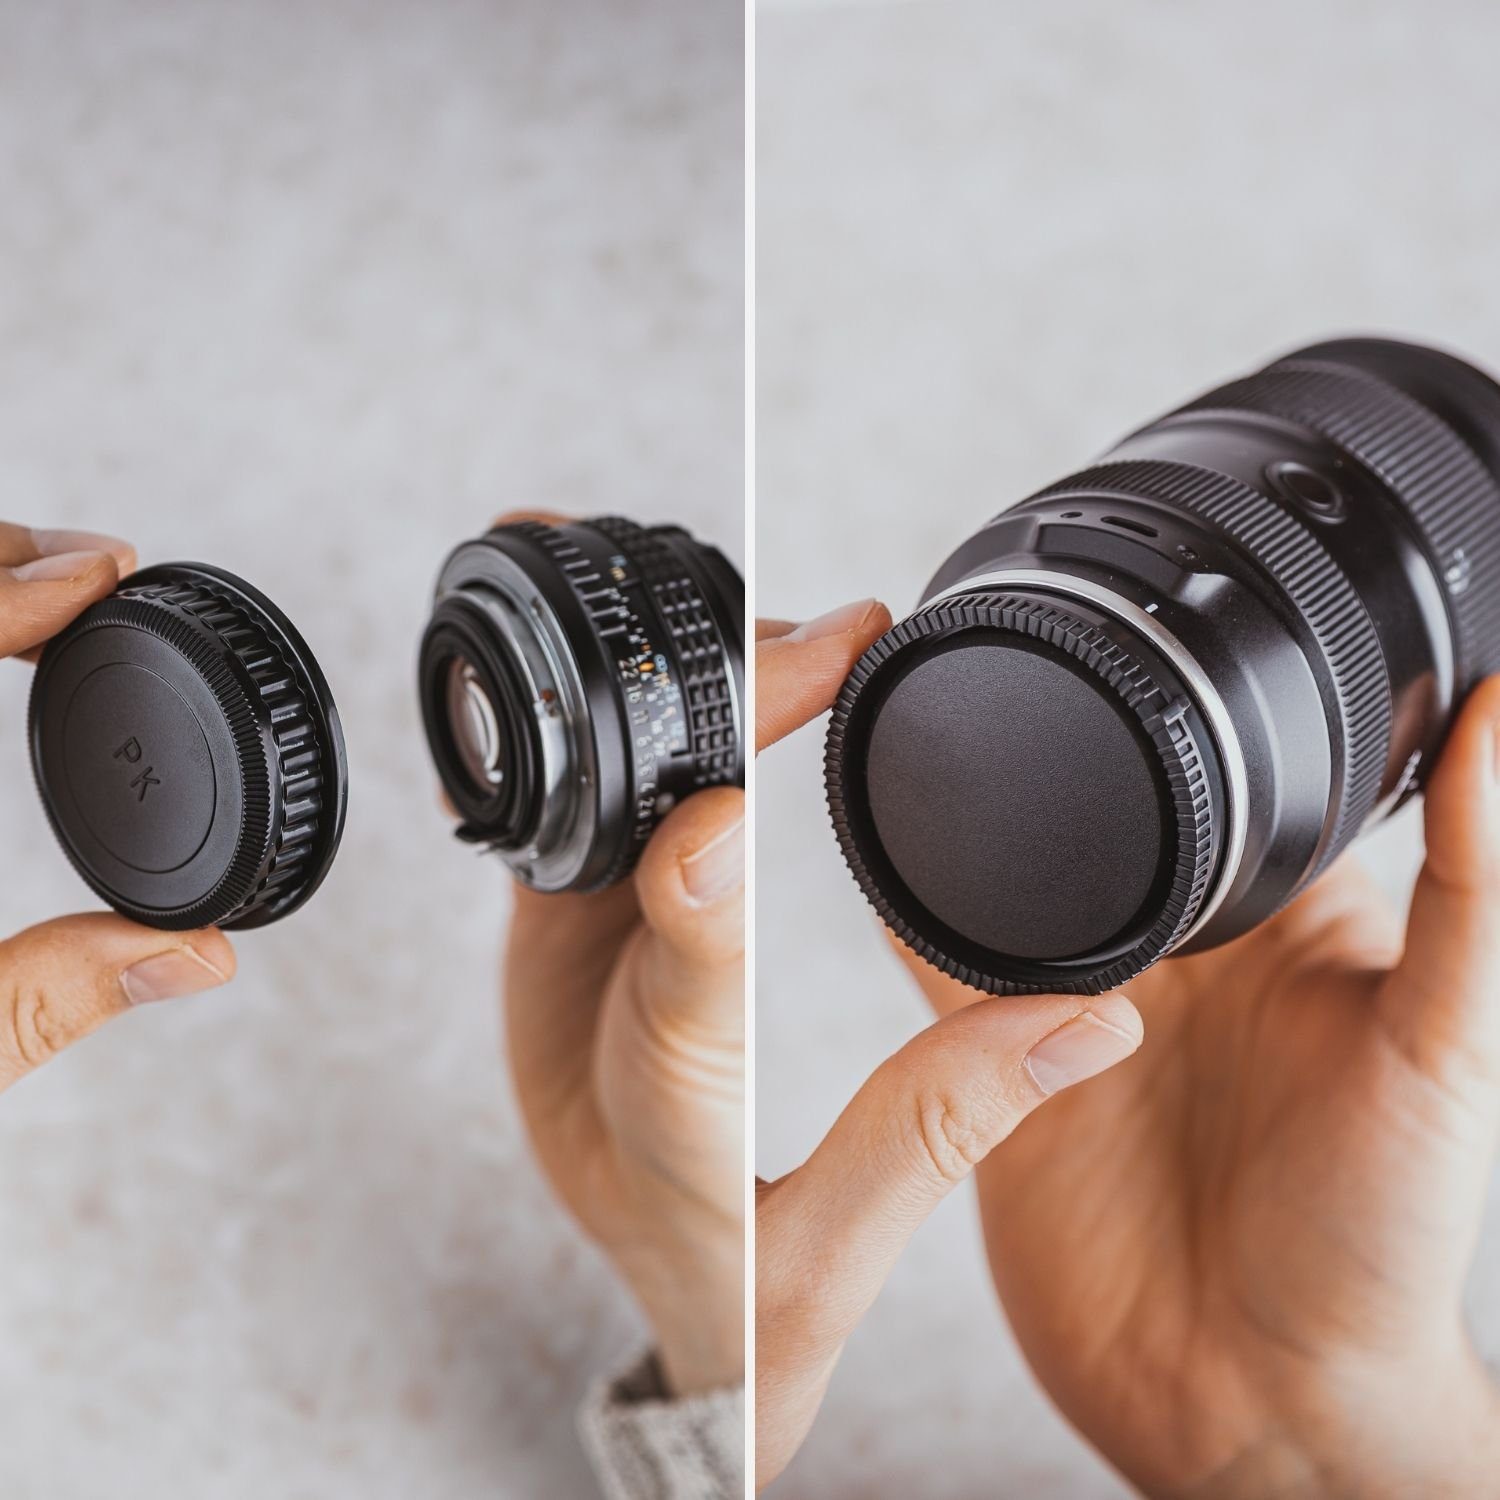 Canon Objektivrückdeckel Lens-Aid EF-Mount für Objektivrückdeckel